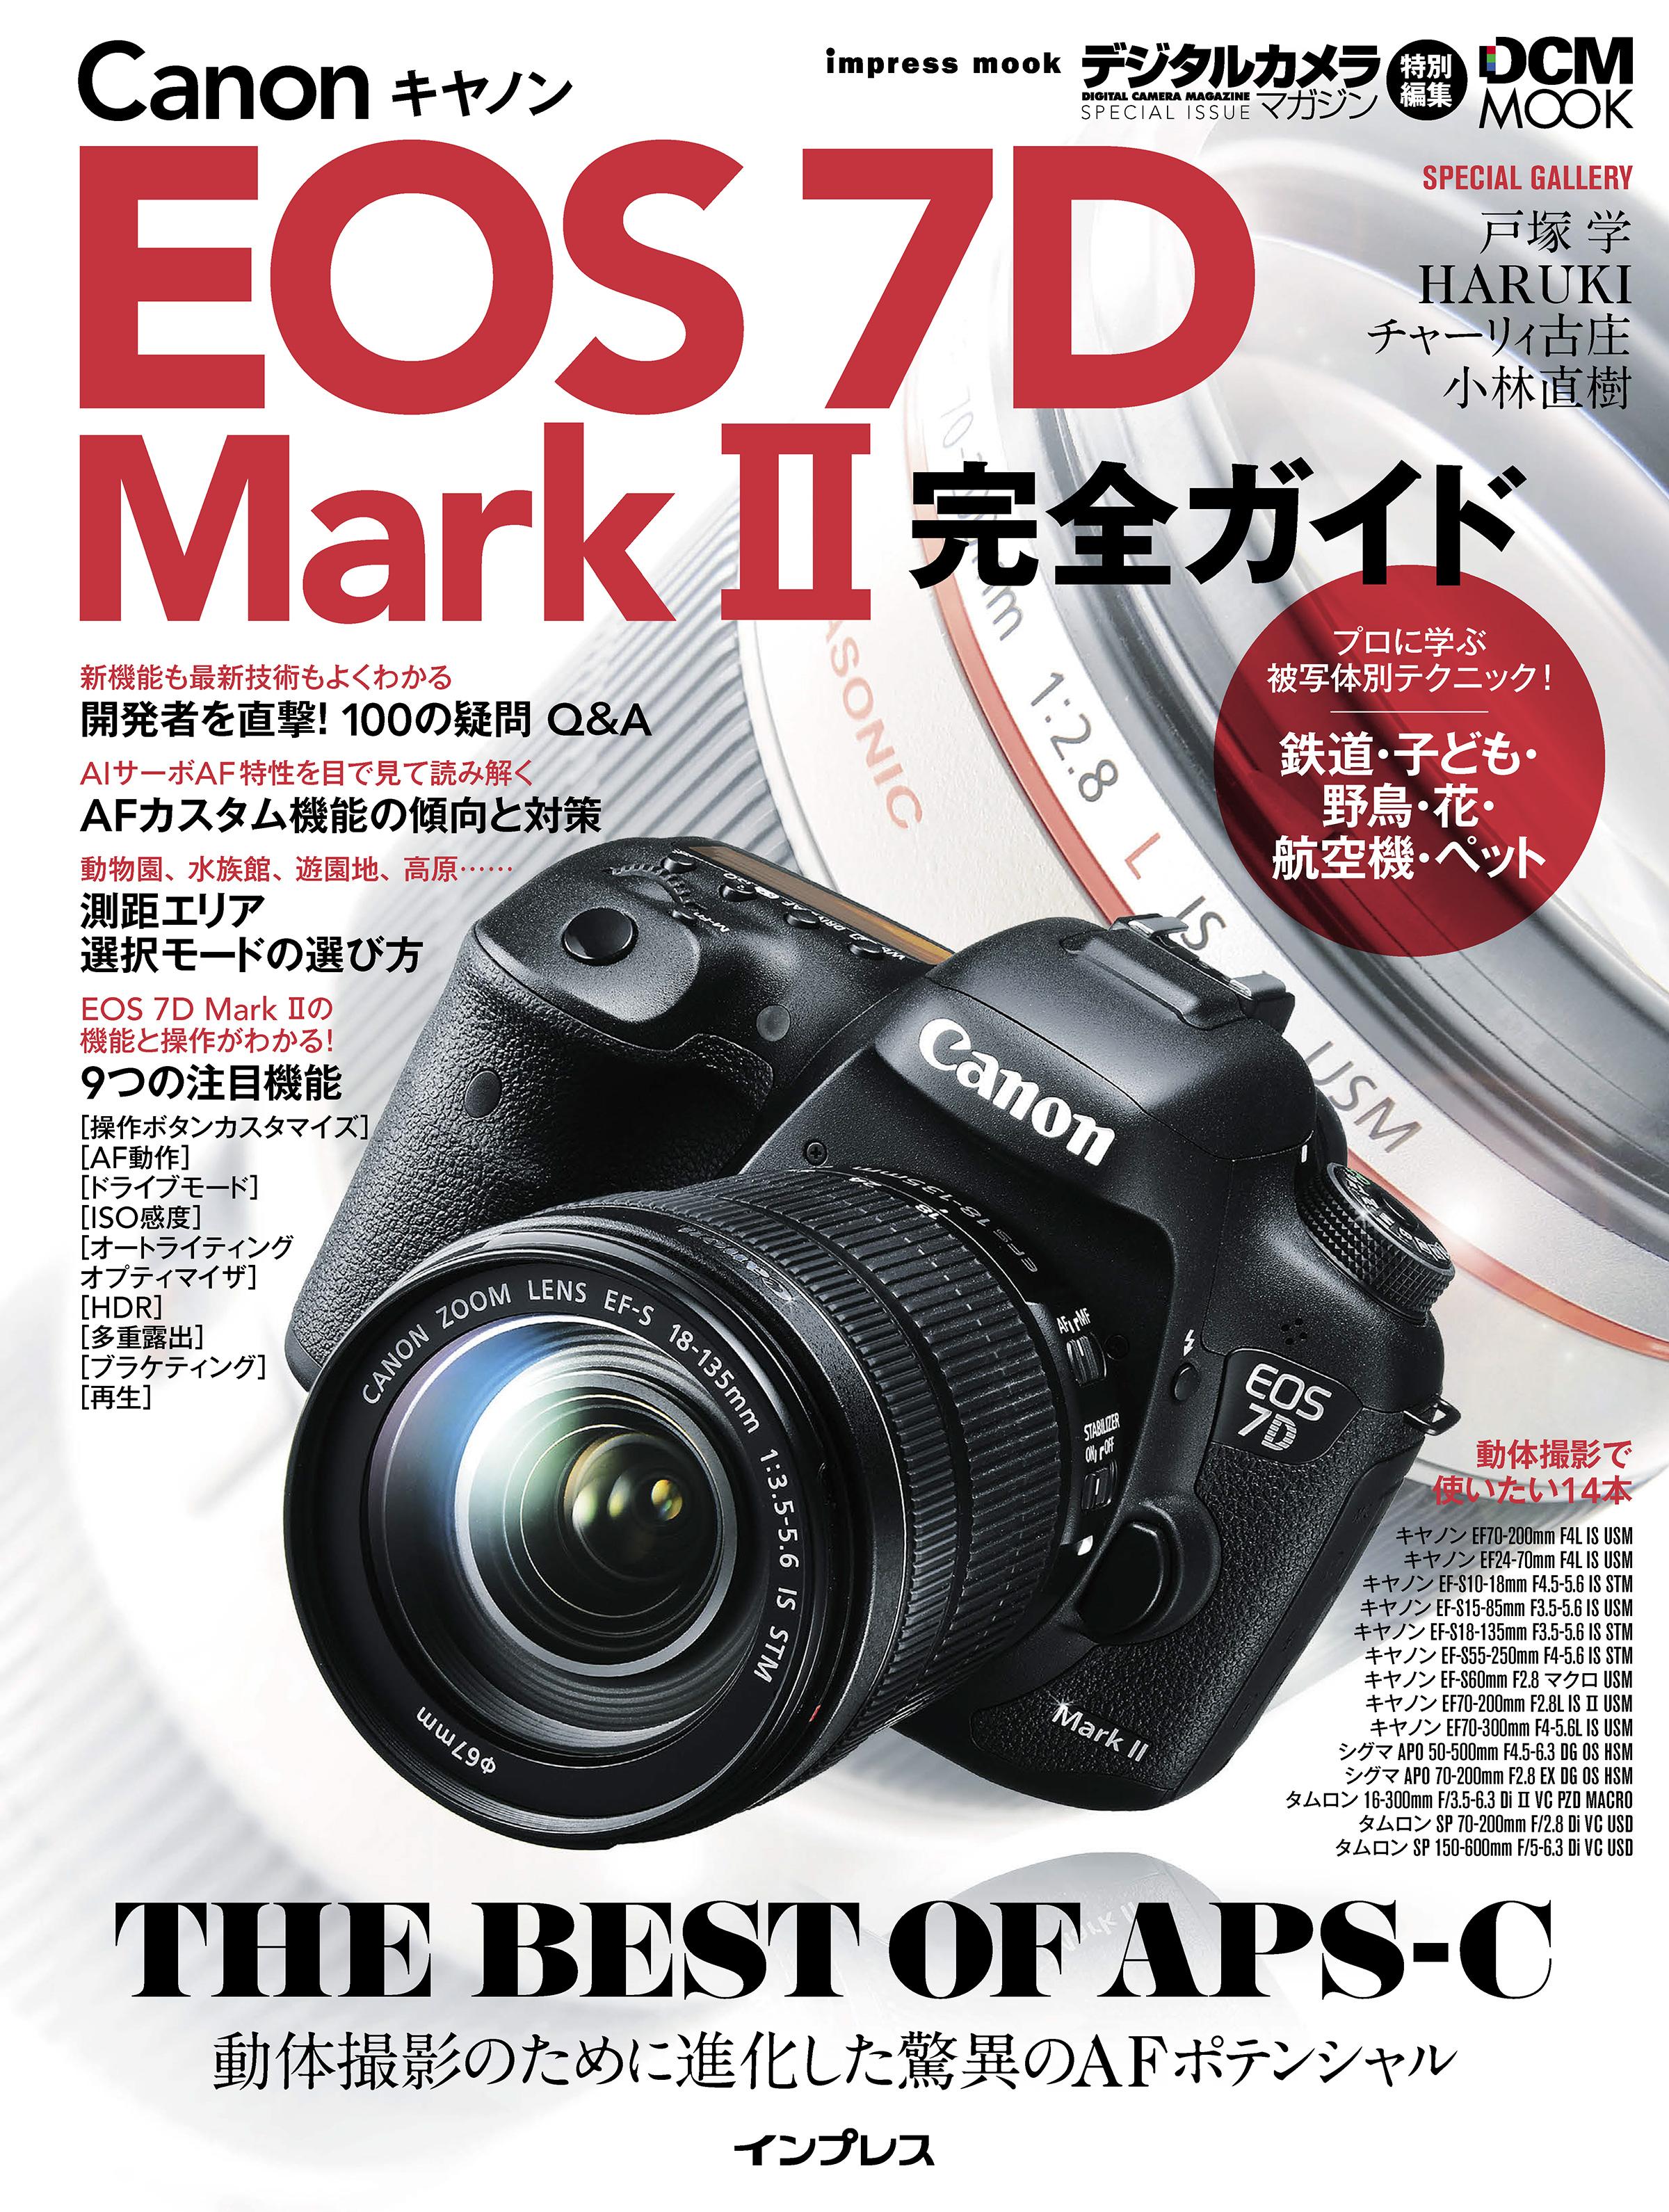 キヤノン EOS 7D Mark II 完全ガイド